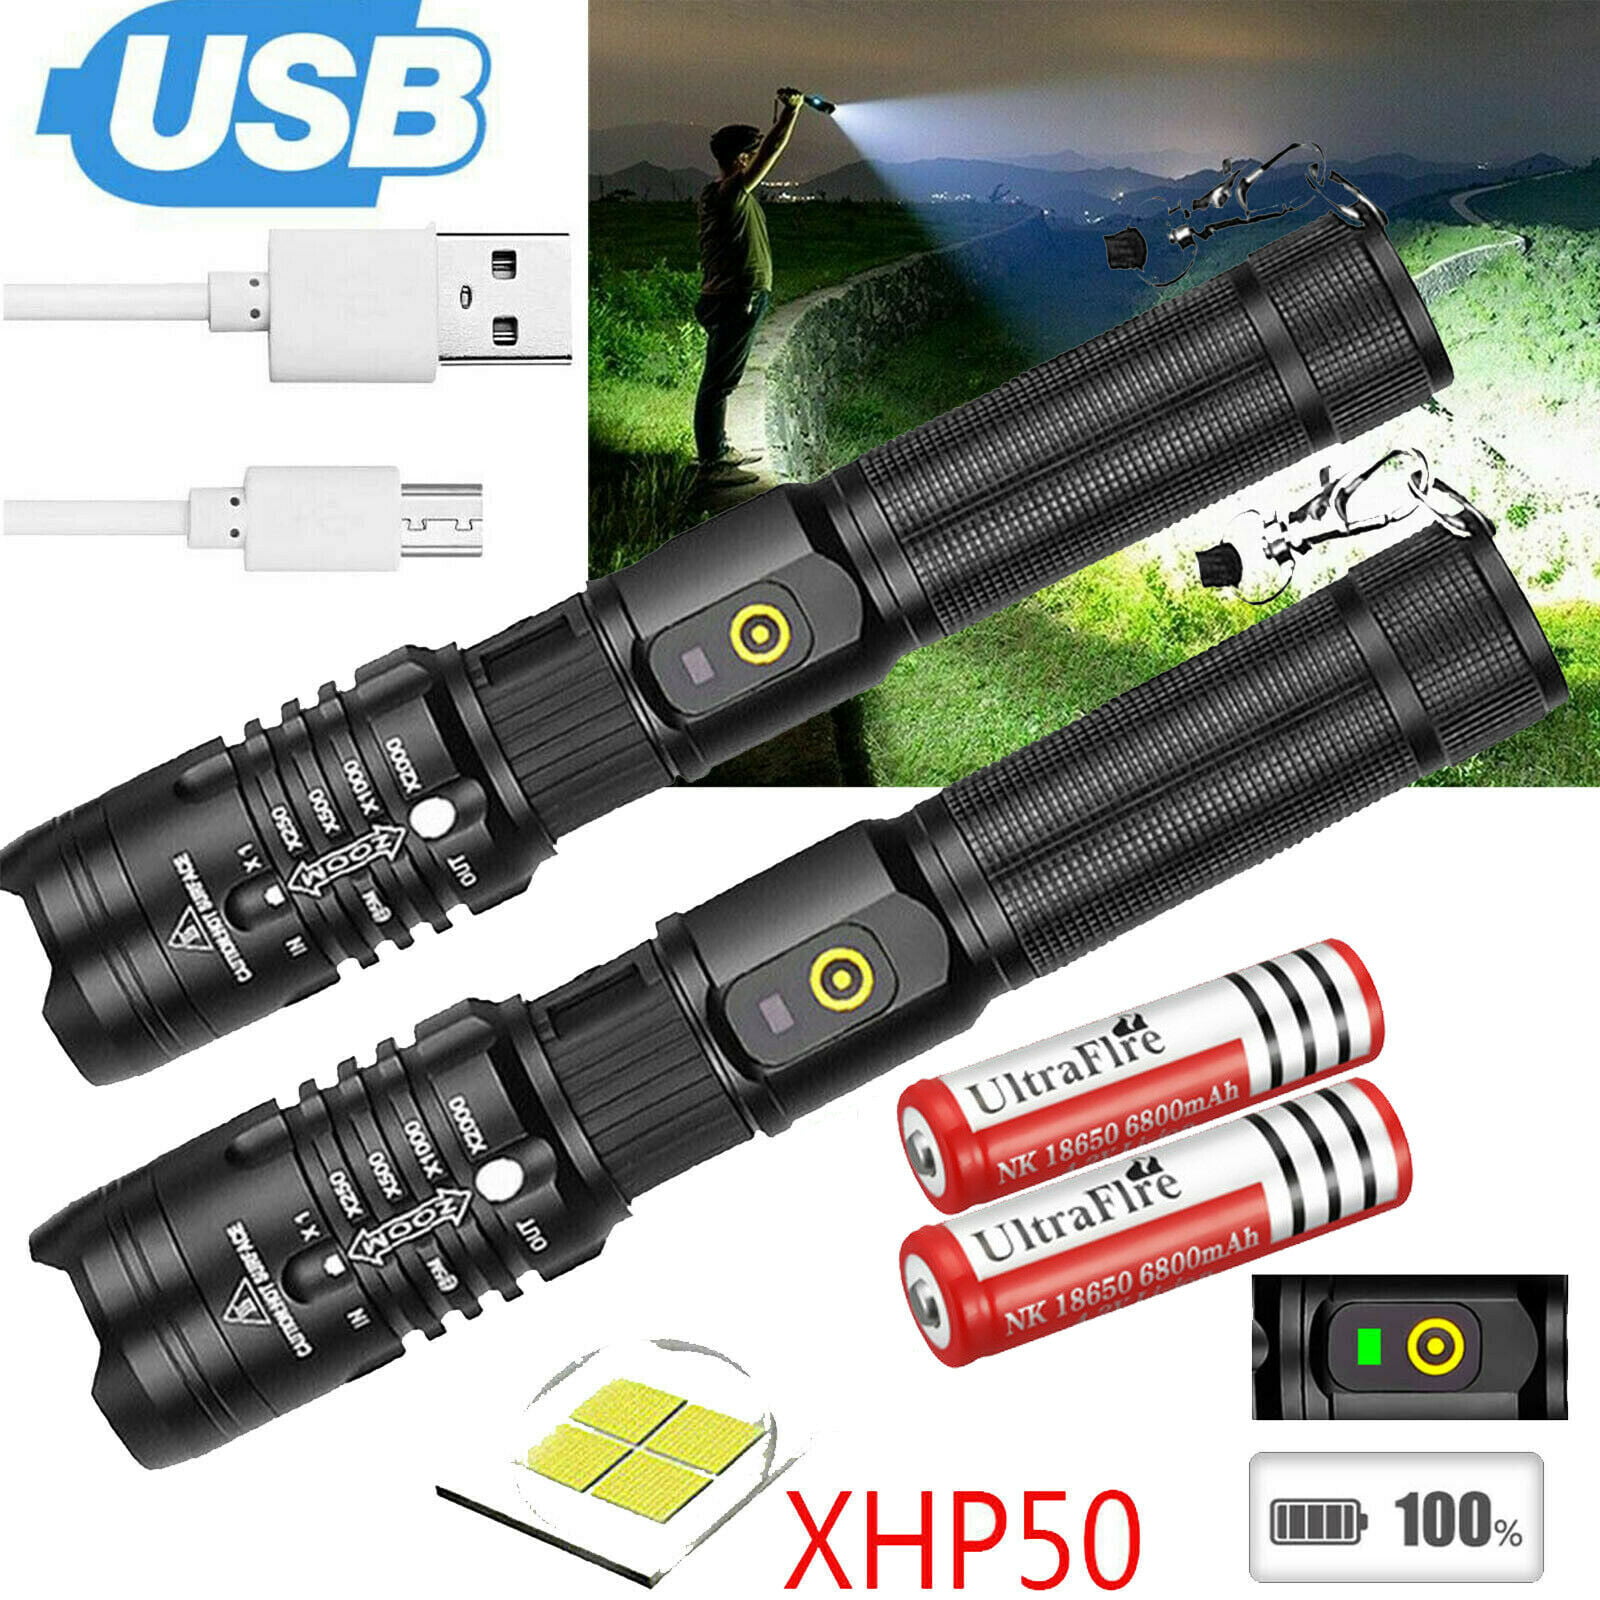 Powerful Taschenlampe Flashlight XHP90 LED Wiederaufladbar Licht 18650 Batterie 